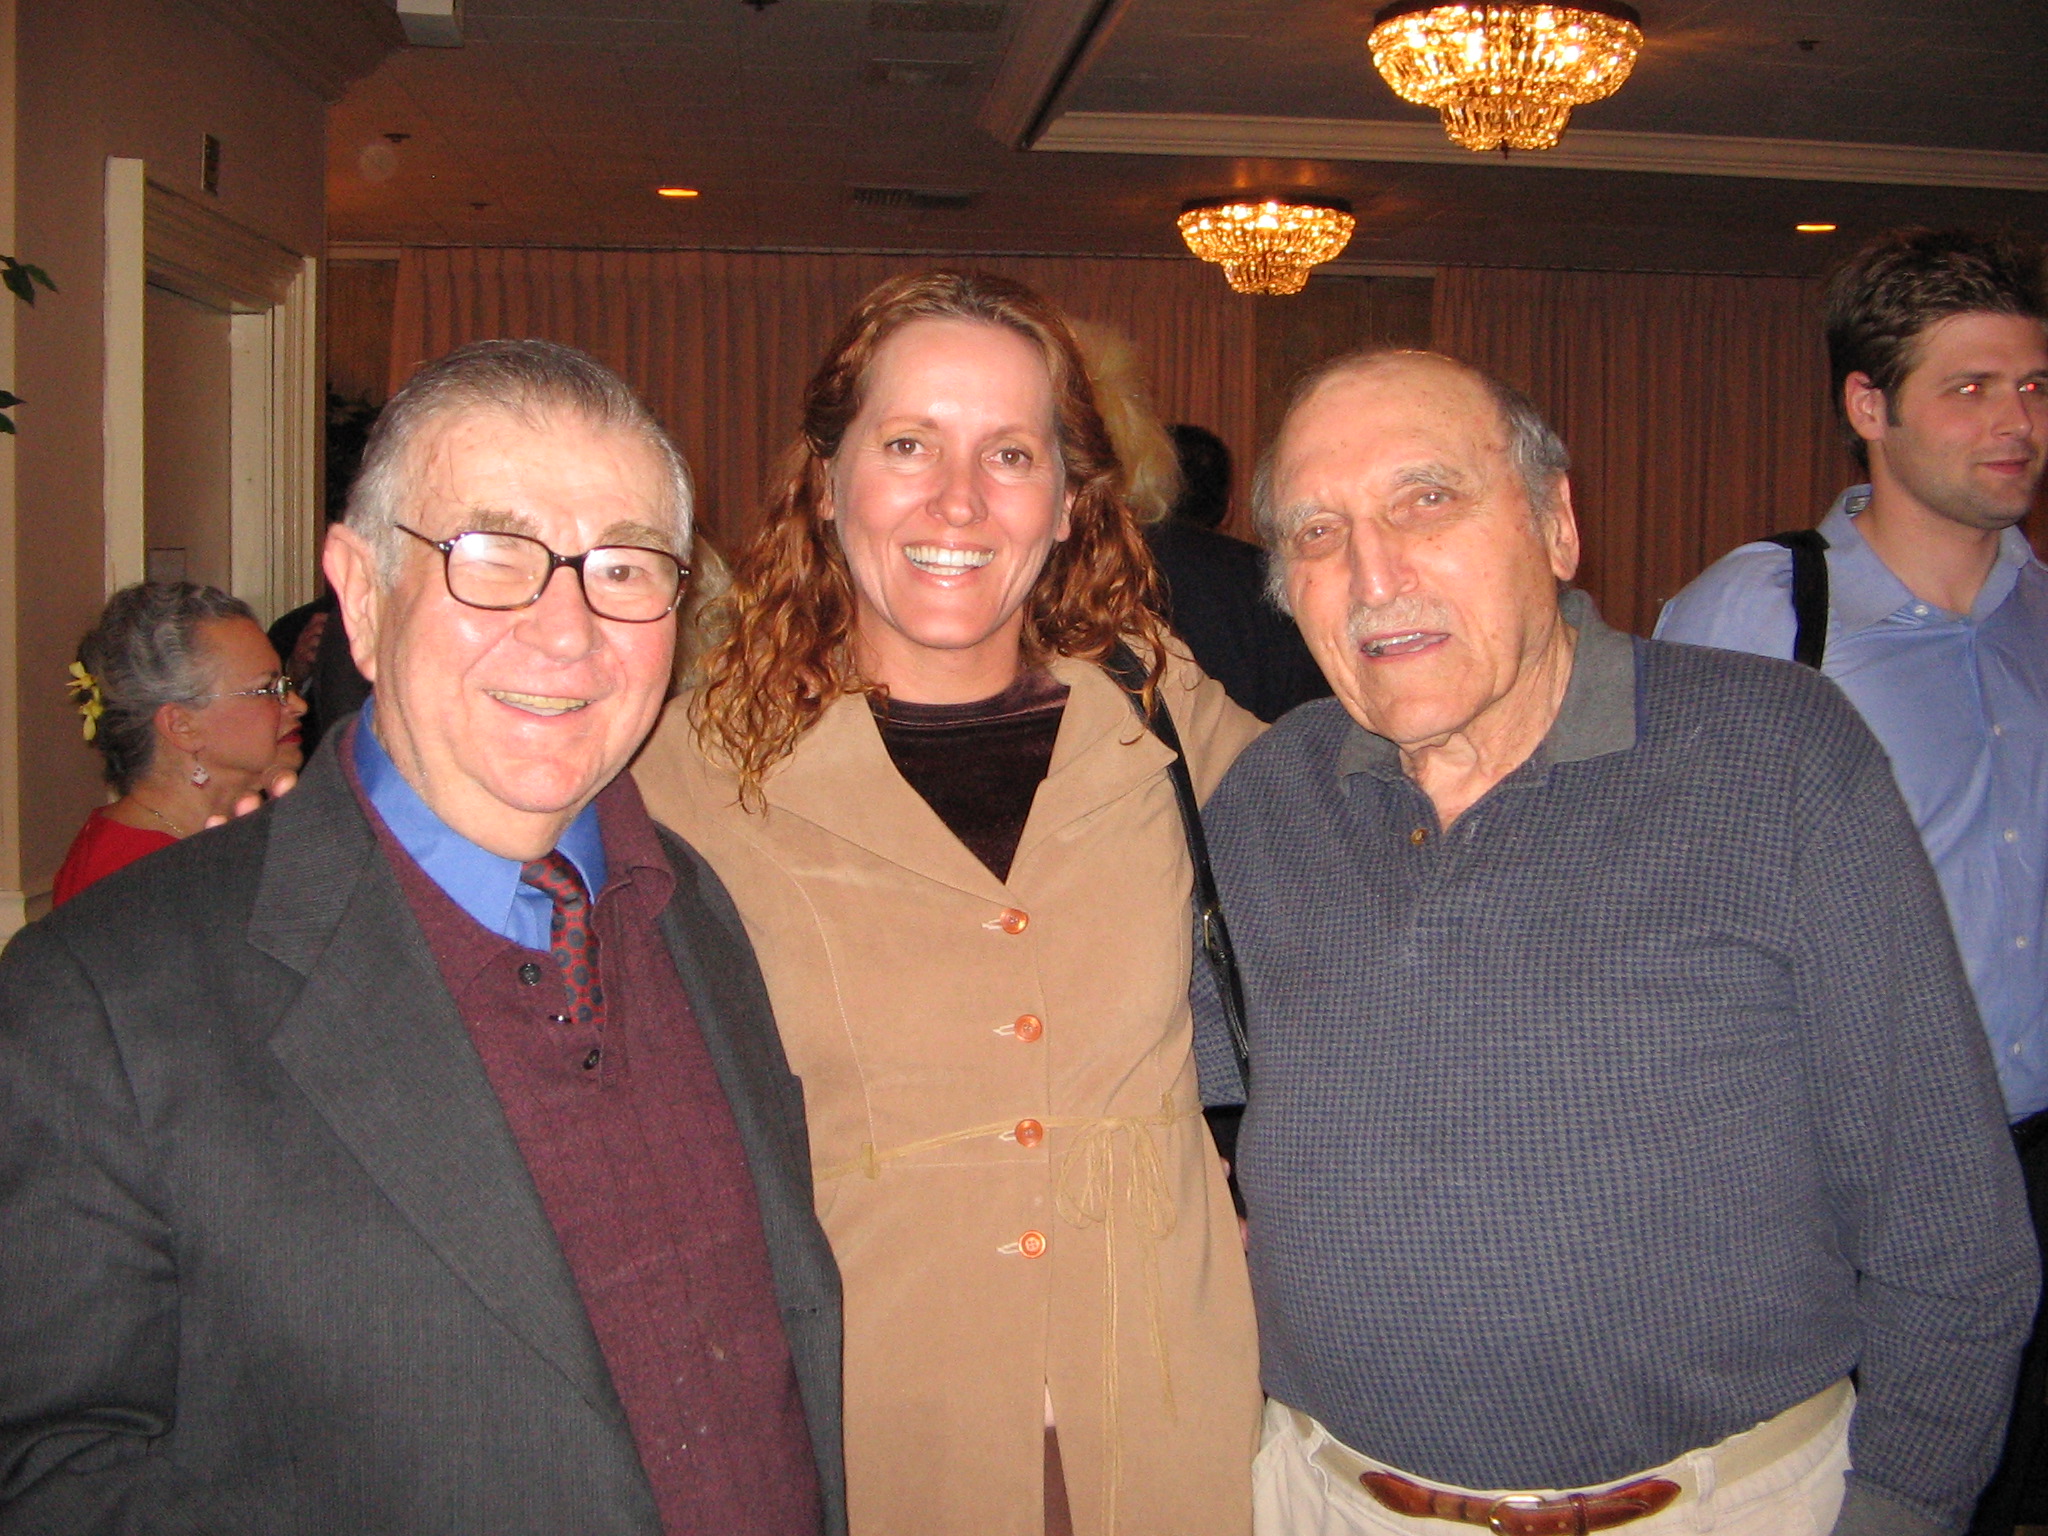 Marvin Kaplan, Sharon Jordan, and Len Lesser.